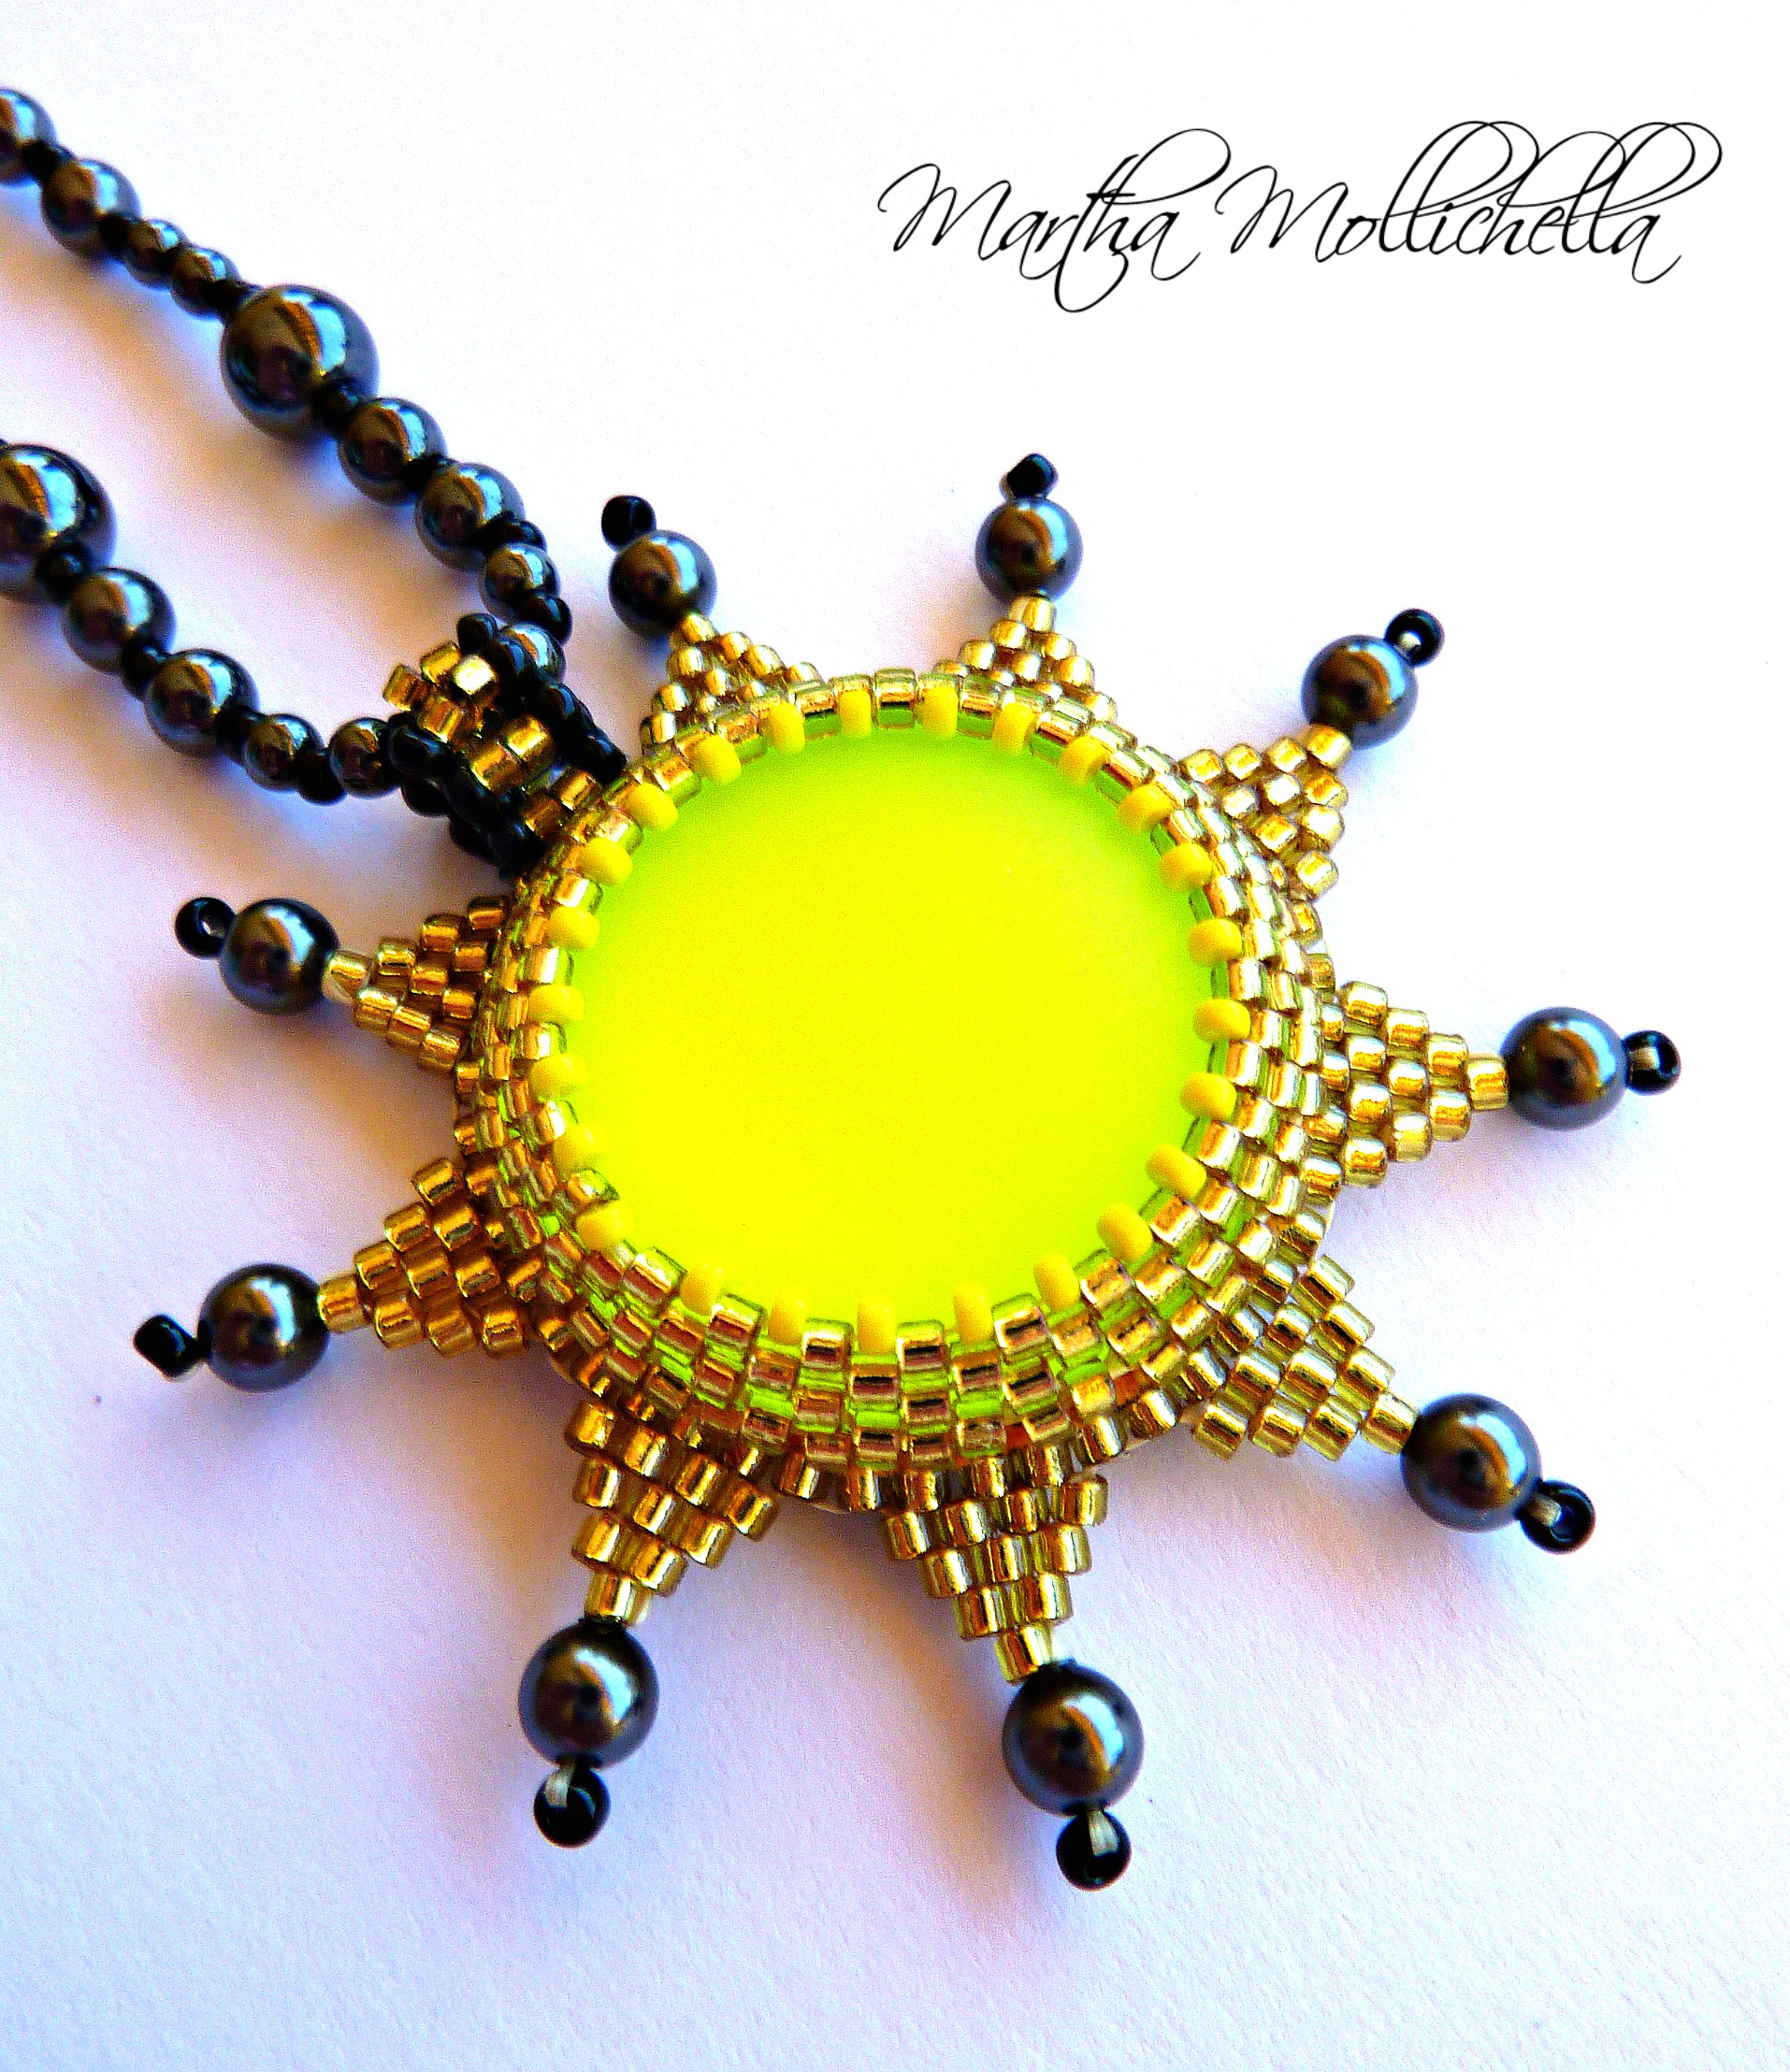 sun pendant ciondolo sole perle ematite chiusura oro sun pendant star edge hematite necklace and gold